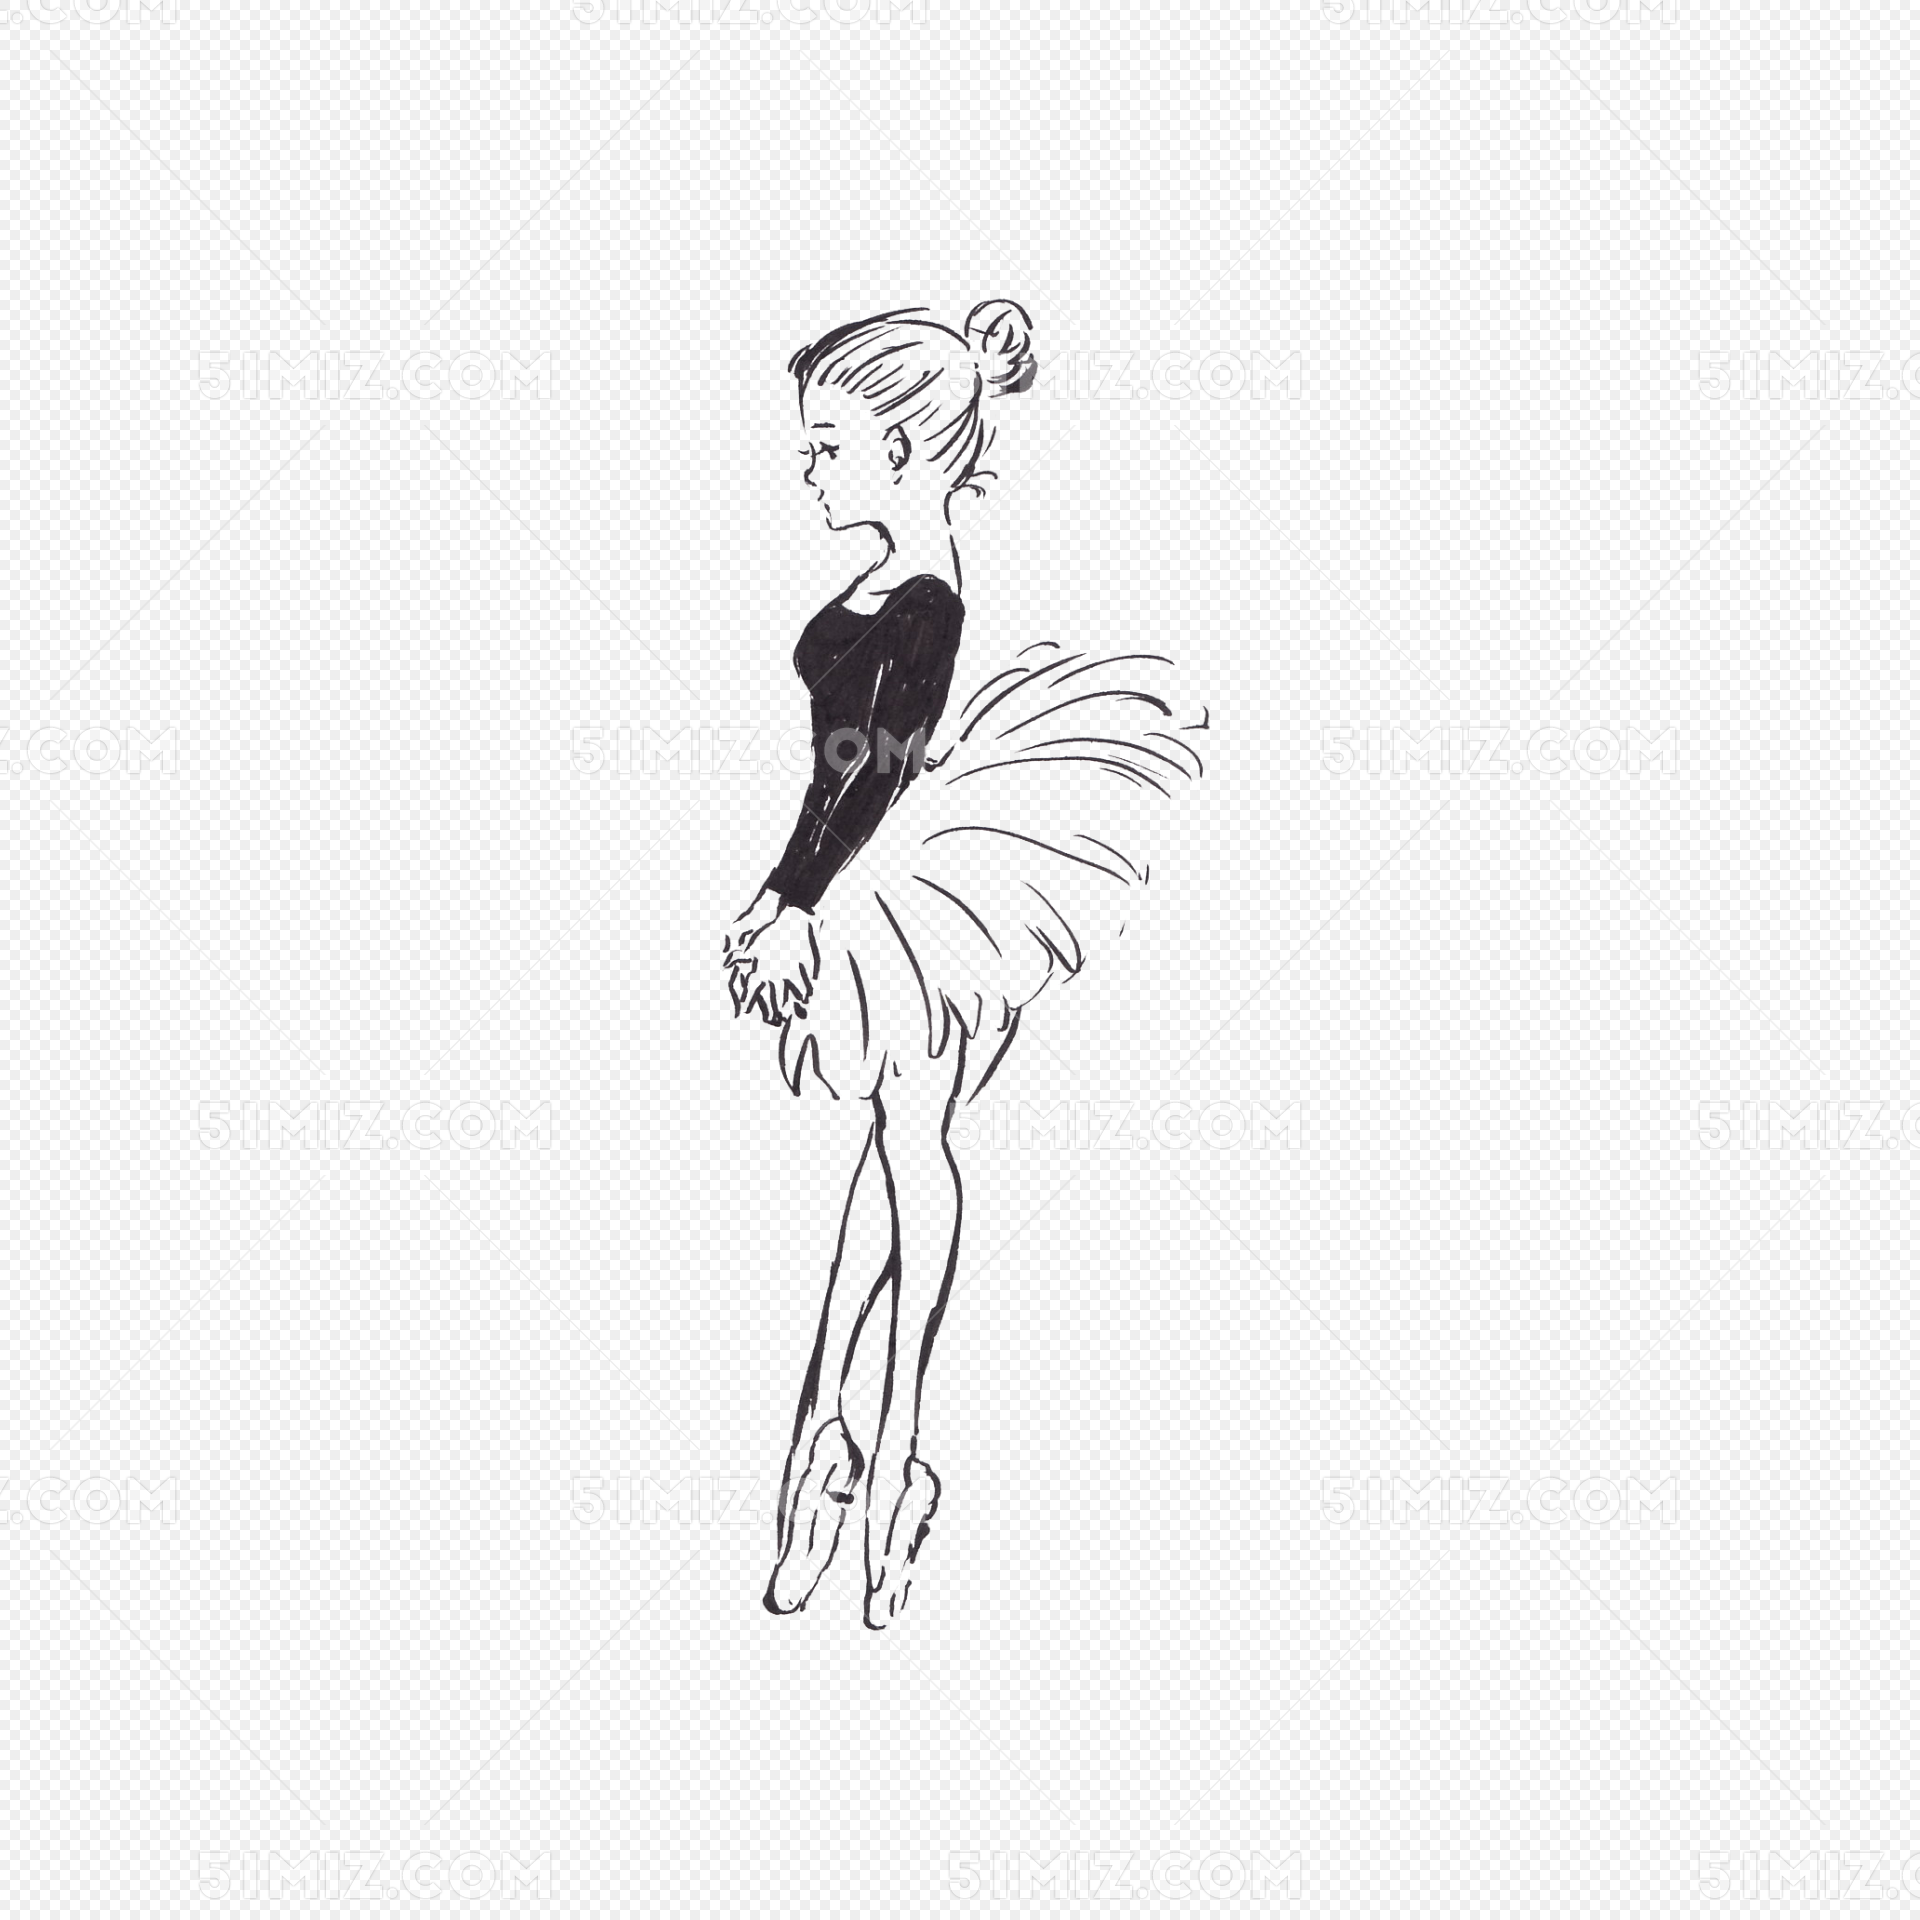 芭蕾舞蹈演员素描图片免费下载-5031130669-千图网Pro